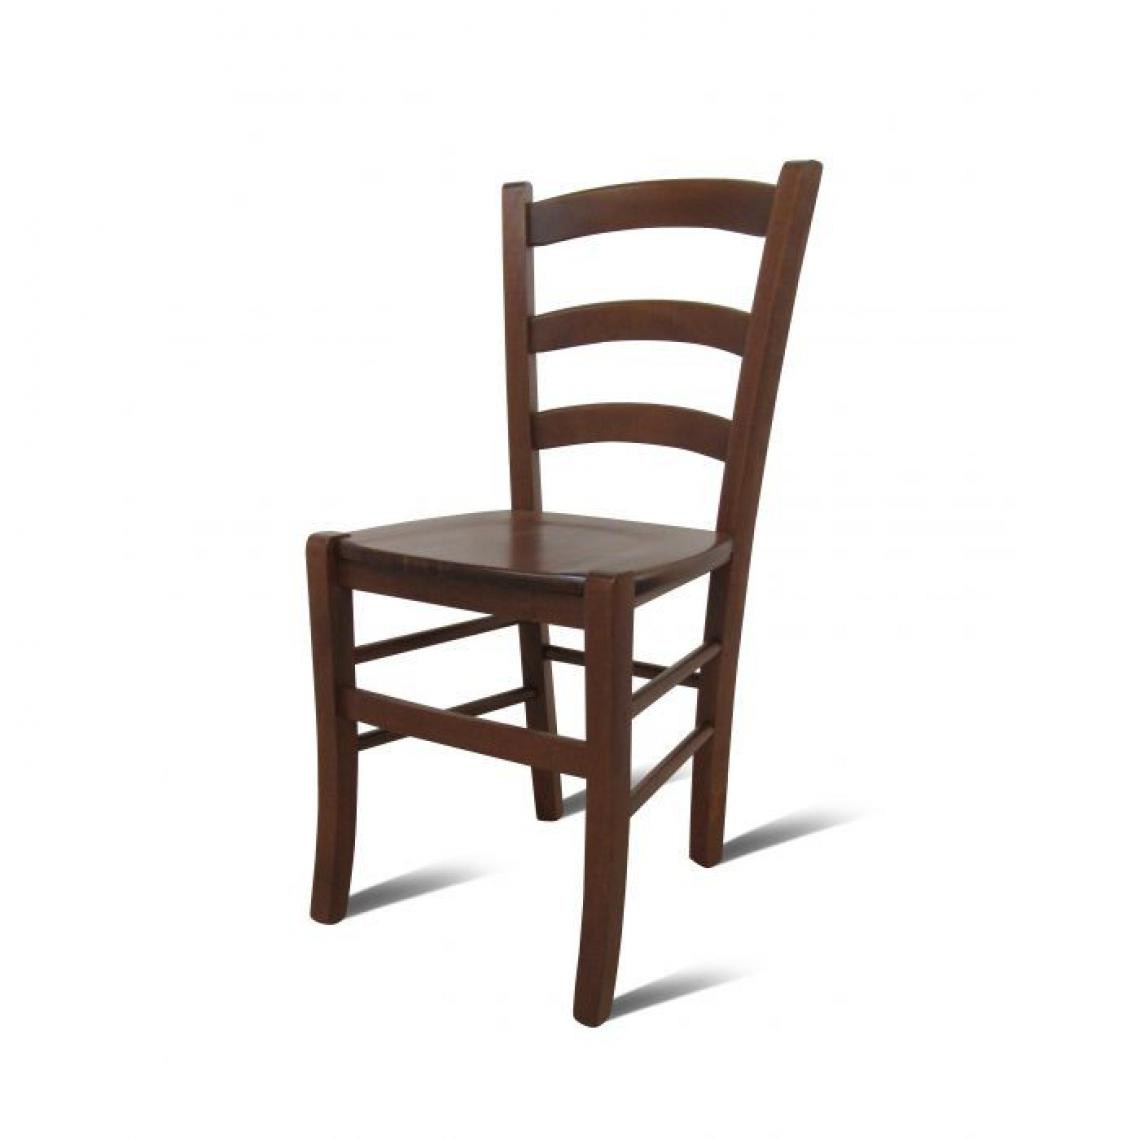 Alter - Chaise classique en bois massif et fond en bois, Made in Italy, 45x44h87 cm, couleur Noyer - Chaises